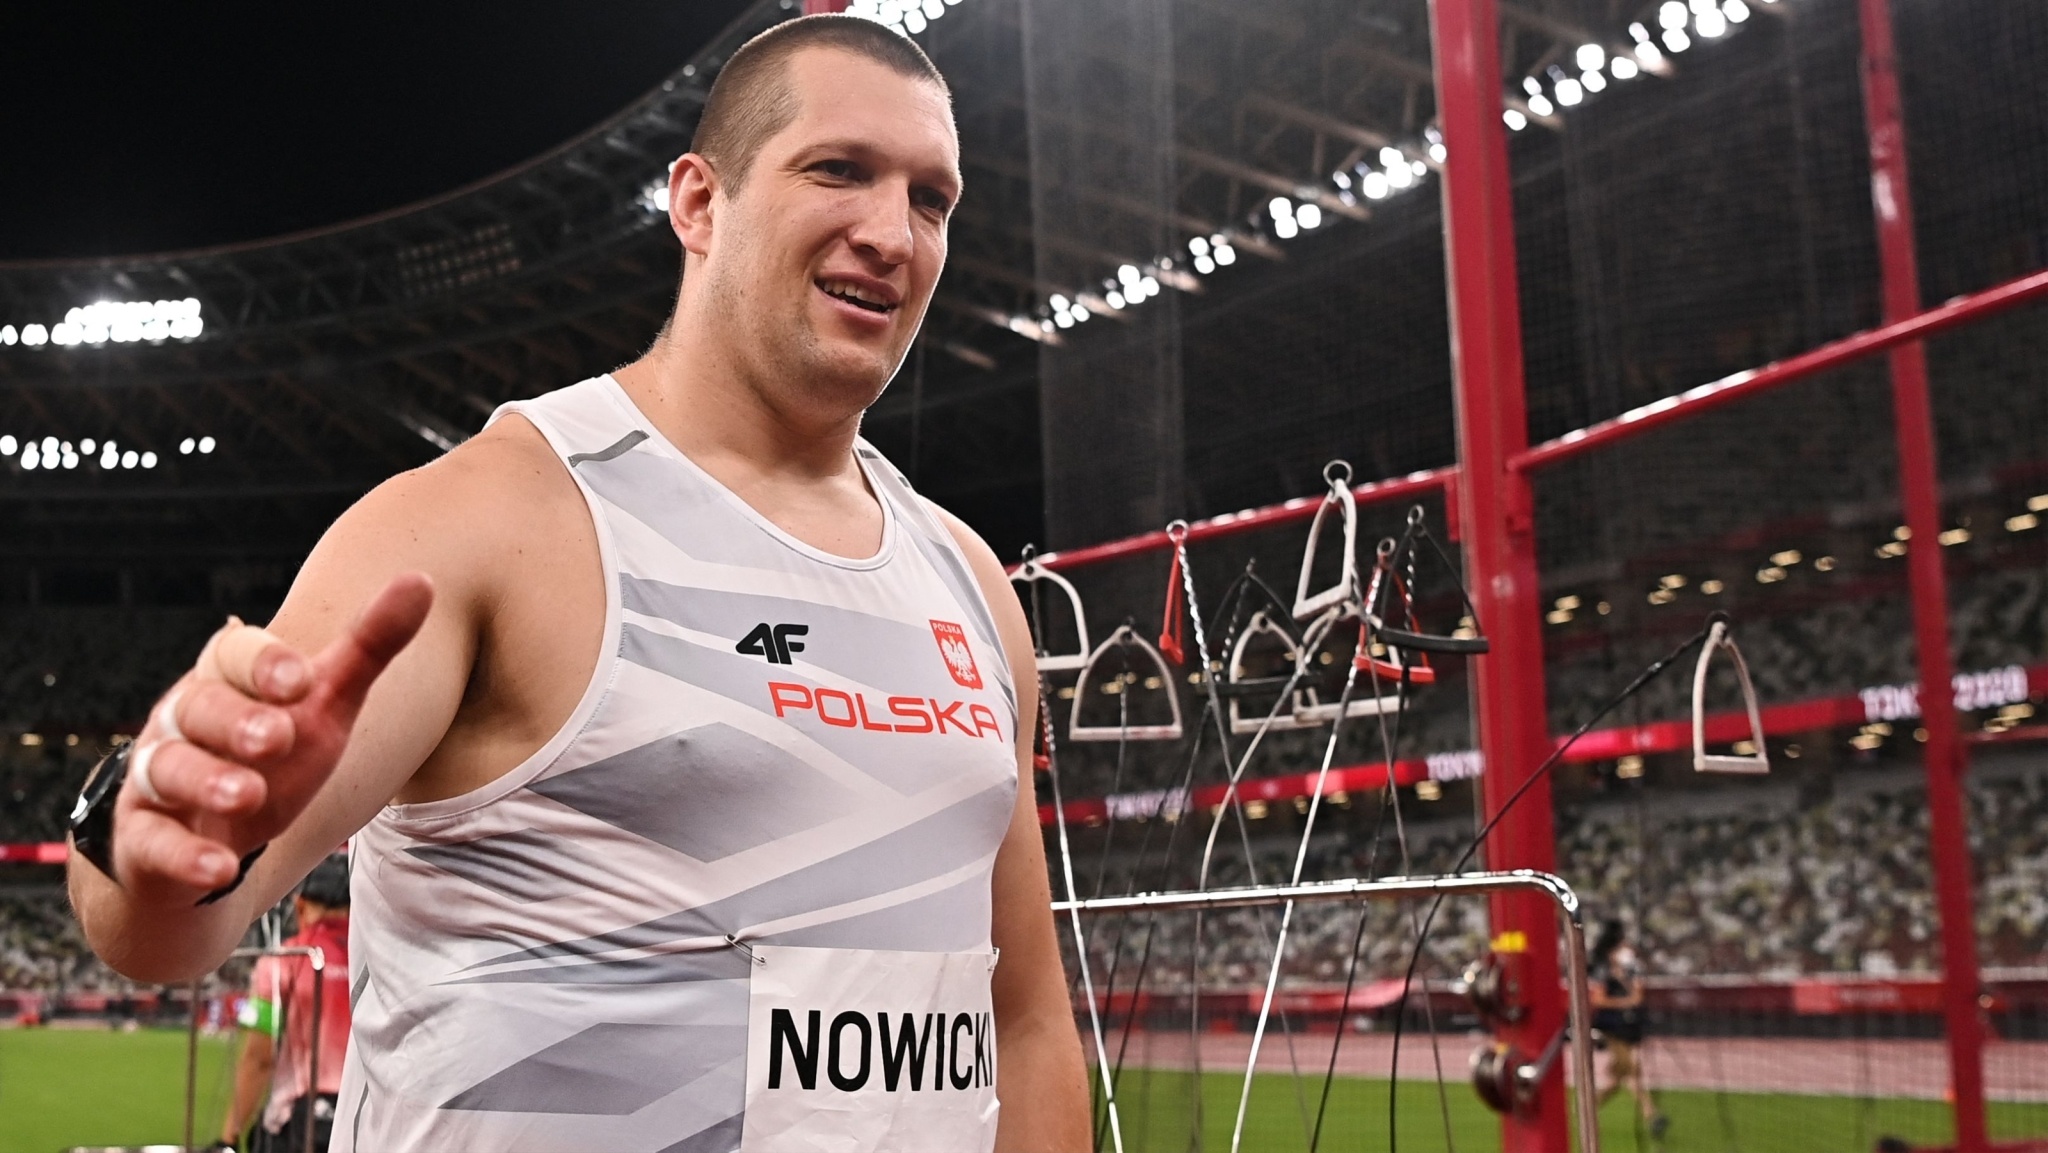 Wojciech Nowicki, Tokyo 2020 gold medalist, Future plans, Athletics schedule, 2050x1160 HD Desktop